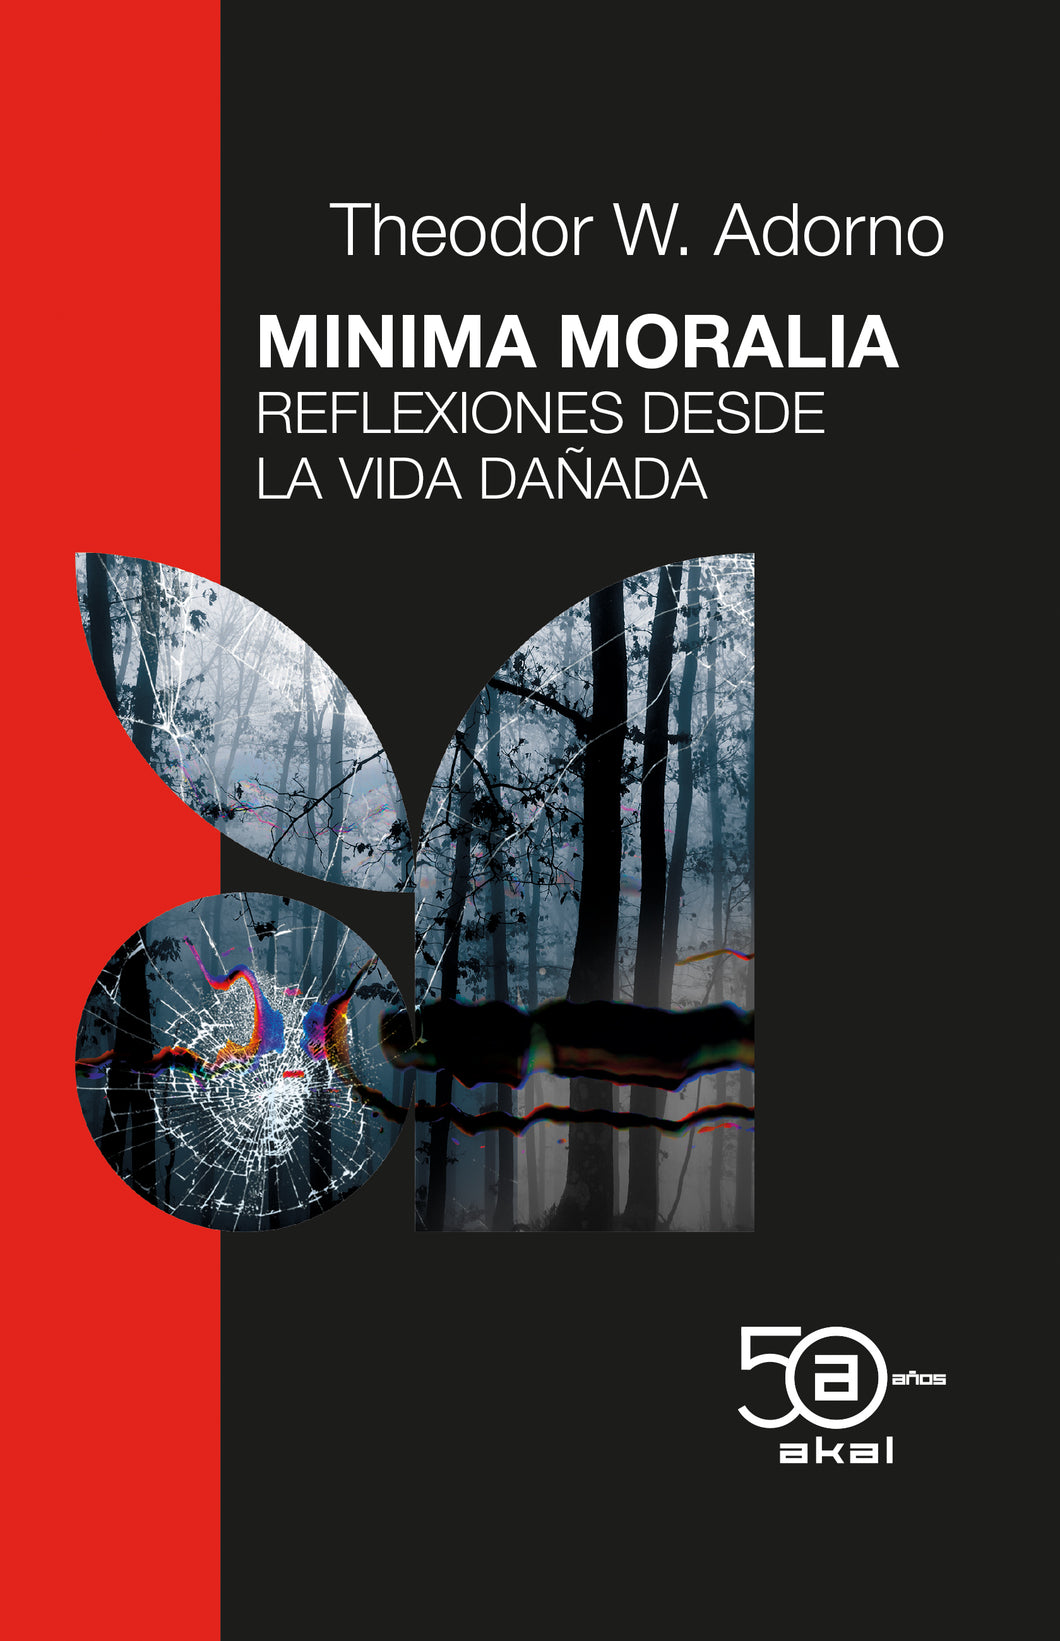 MINIMA MORALIA: REFLEXIONES DESDE LA VIDA DAÑADA - Theodor W. Adorno